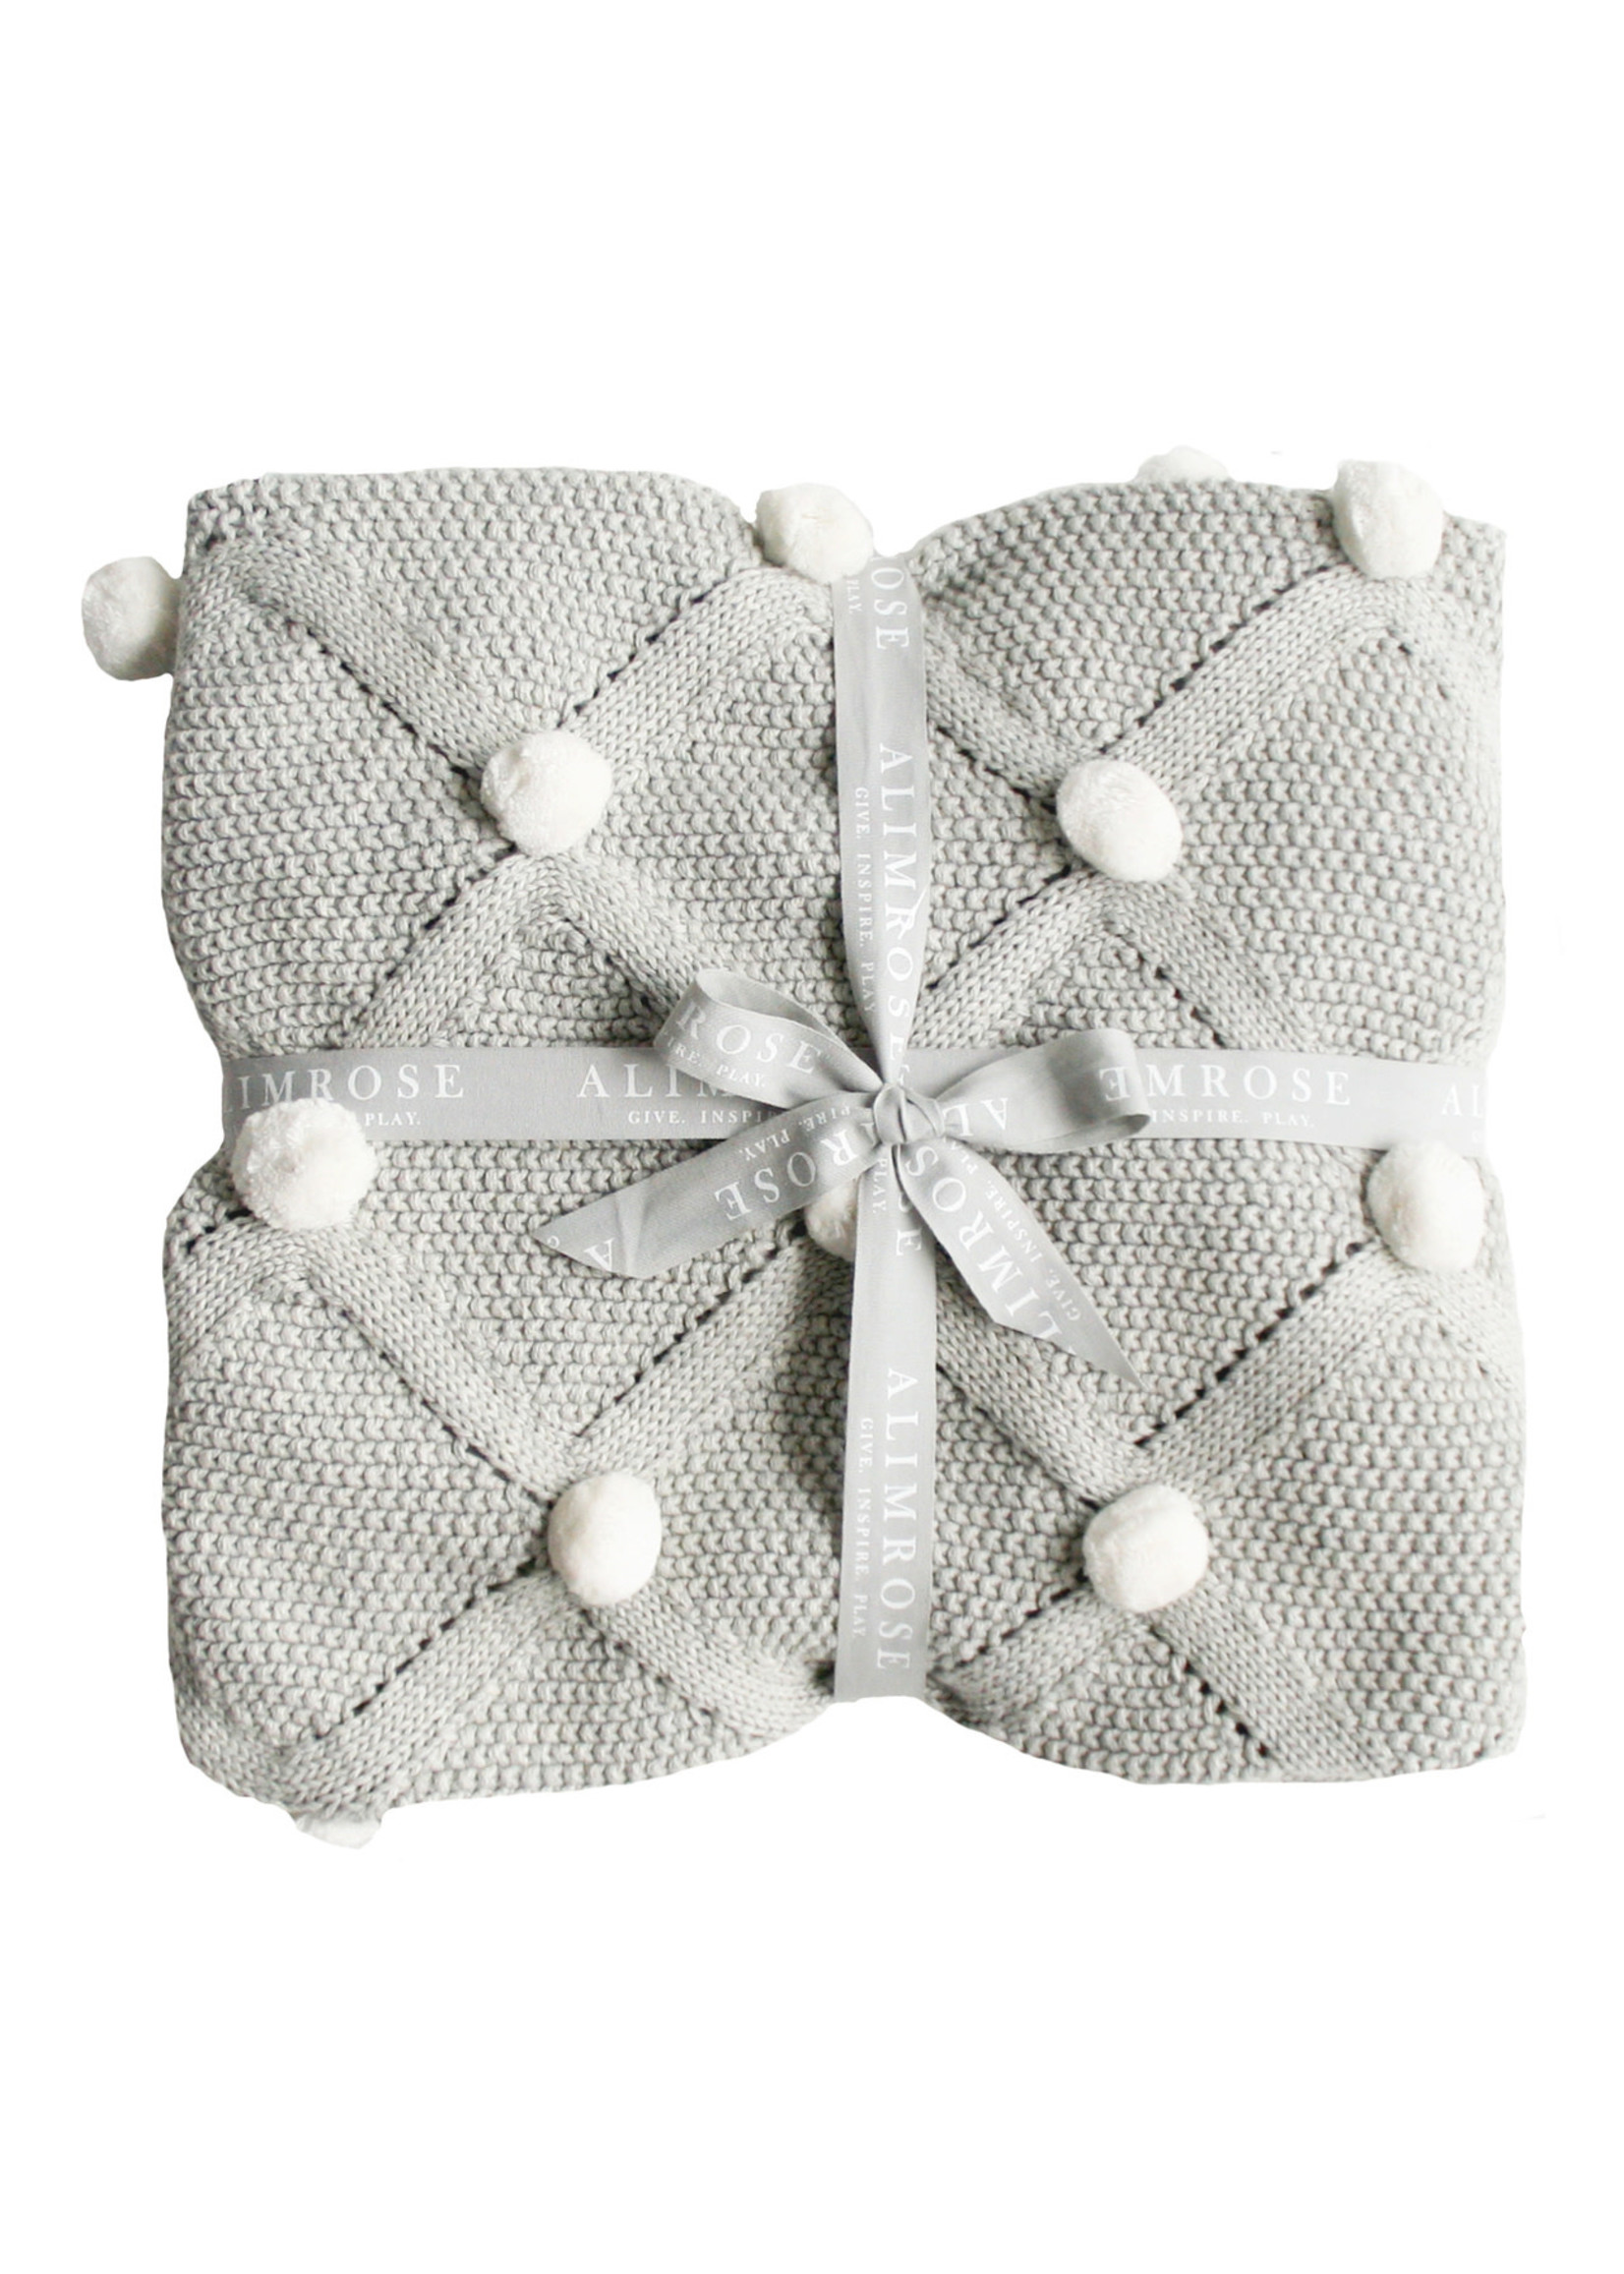 Baby Blanket - Pom Pom Grey & Ivory